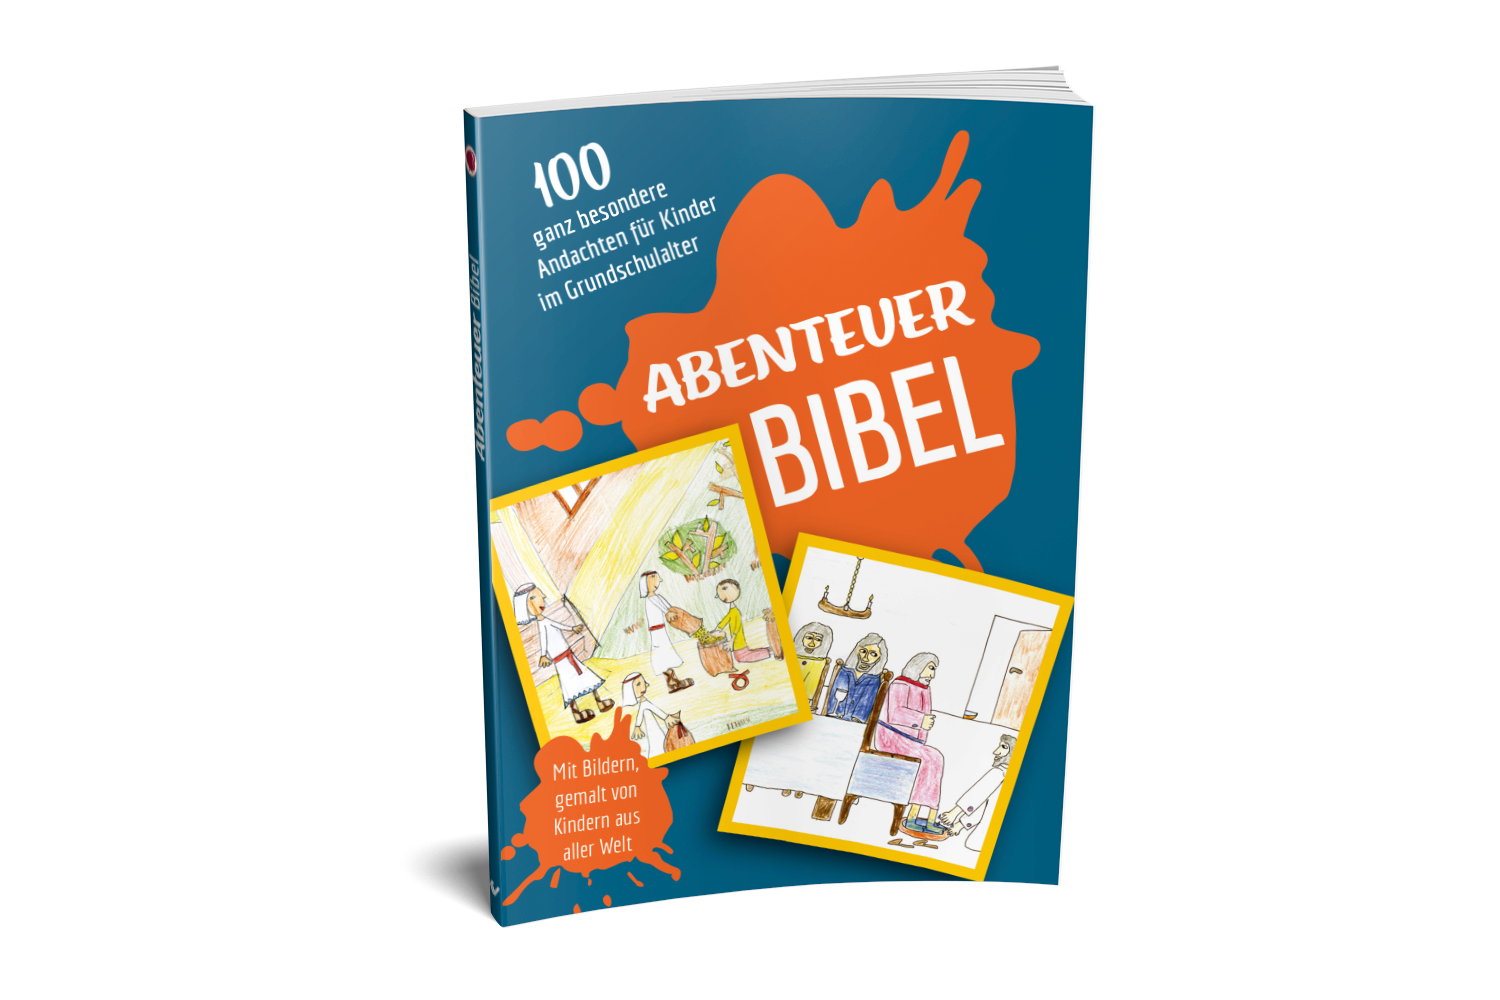 Abenteuer Bibel - Eine spannende Entdeckungsreise durch die ganze Bibel!